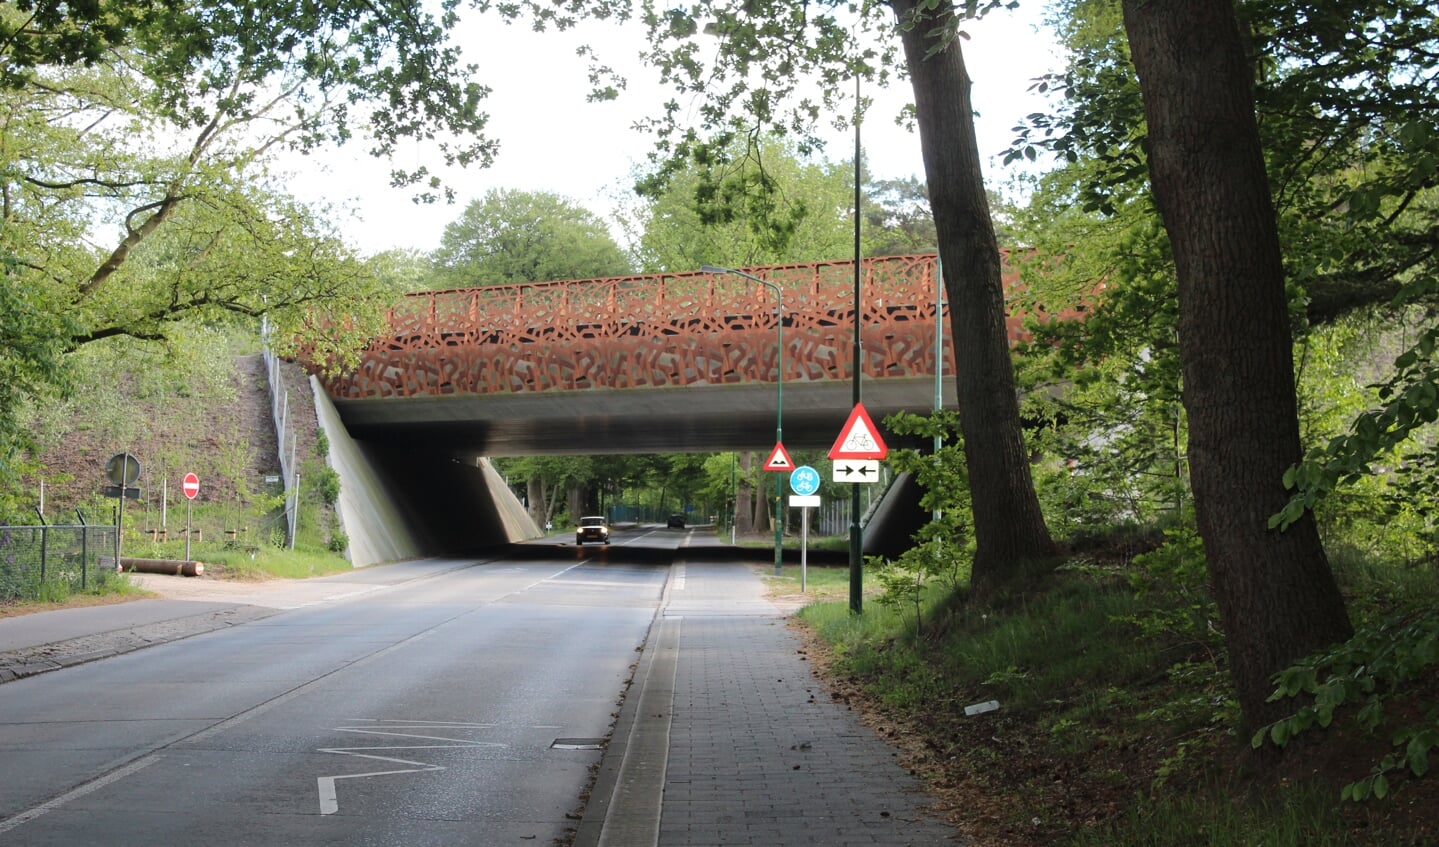 De natuurverbinding tussen het Gooi en de Utrechtse Heuvelrug is in maart 2016 afgerond. De nieuwe brug overspant de Utrechtseweg (N417) en heeft ook een fiets- en ruiterpad. Op 21 mei a.s. is de officiële opening van 11.00 tot 12.30u. van de ecoducten en toegankelijk voor publiek.
